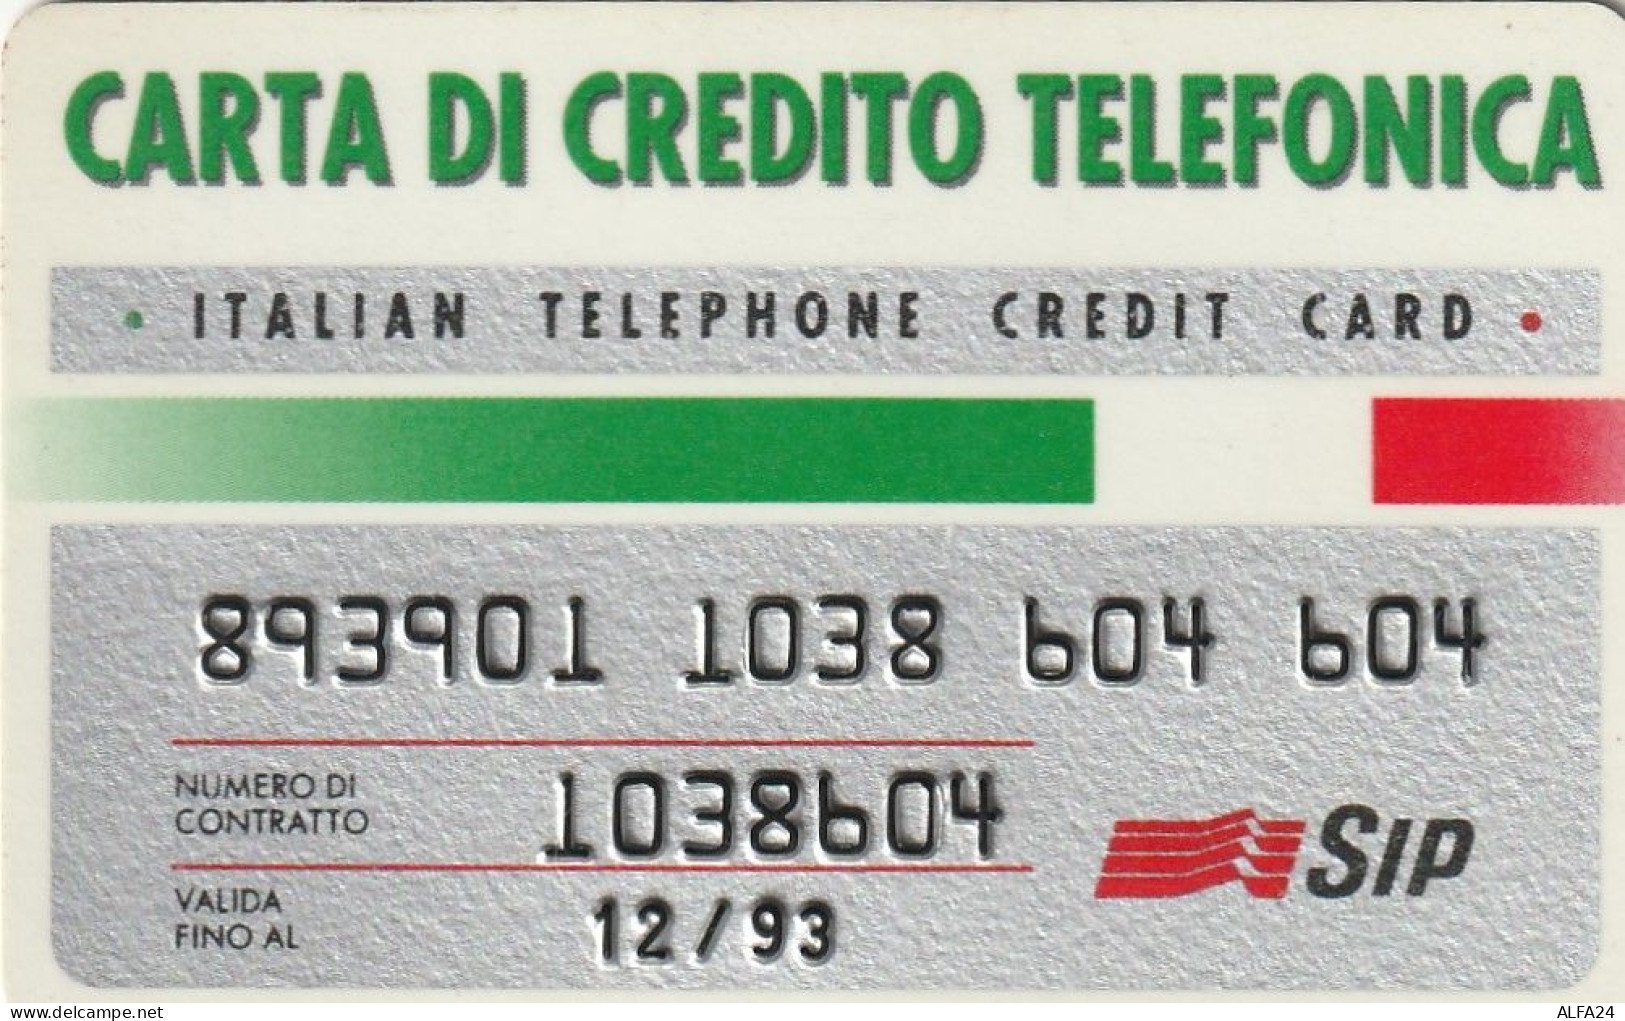 CARTA DI CREDITO TELEFONICA SIP 12/93  (CZ1046 - Usi Speciali